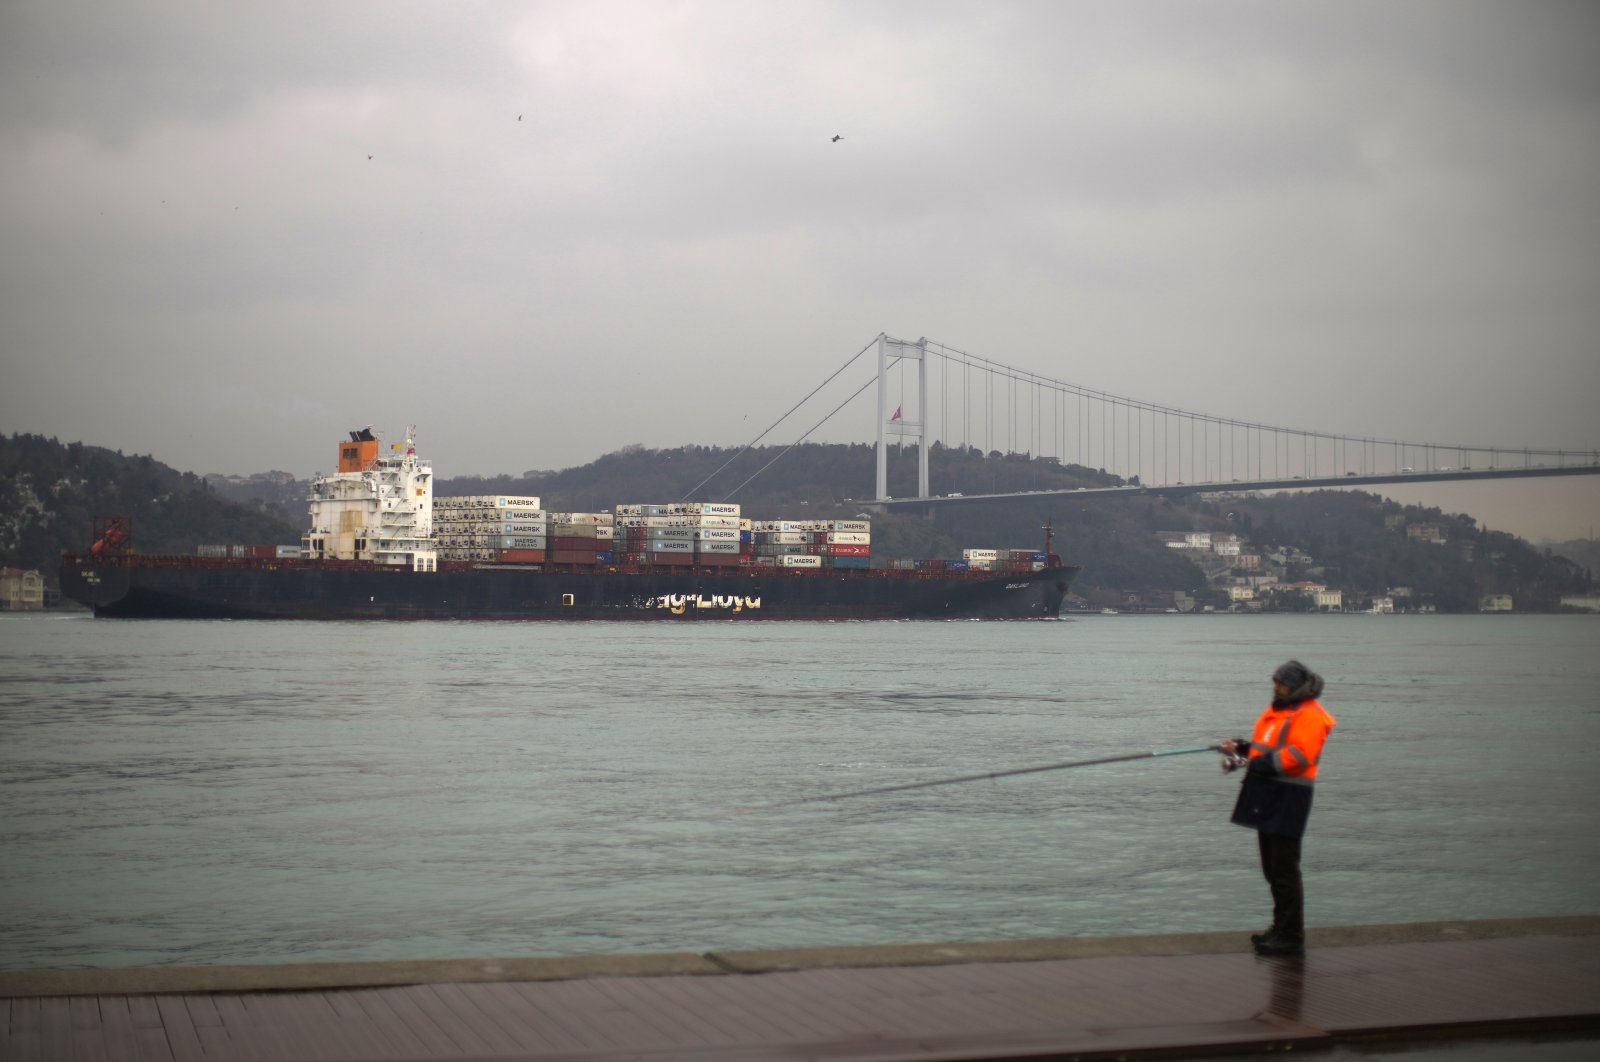 Turki mengharapkan dukungan Rusia untuk kembalinya kapal-kapal Turki dengan aman